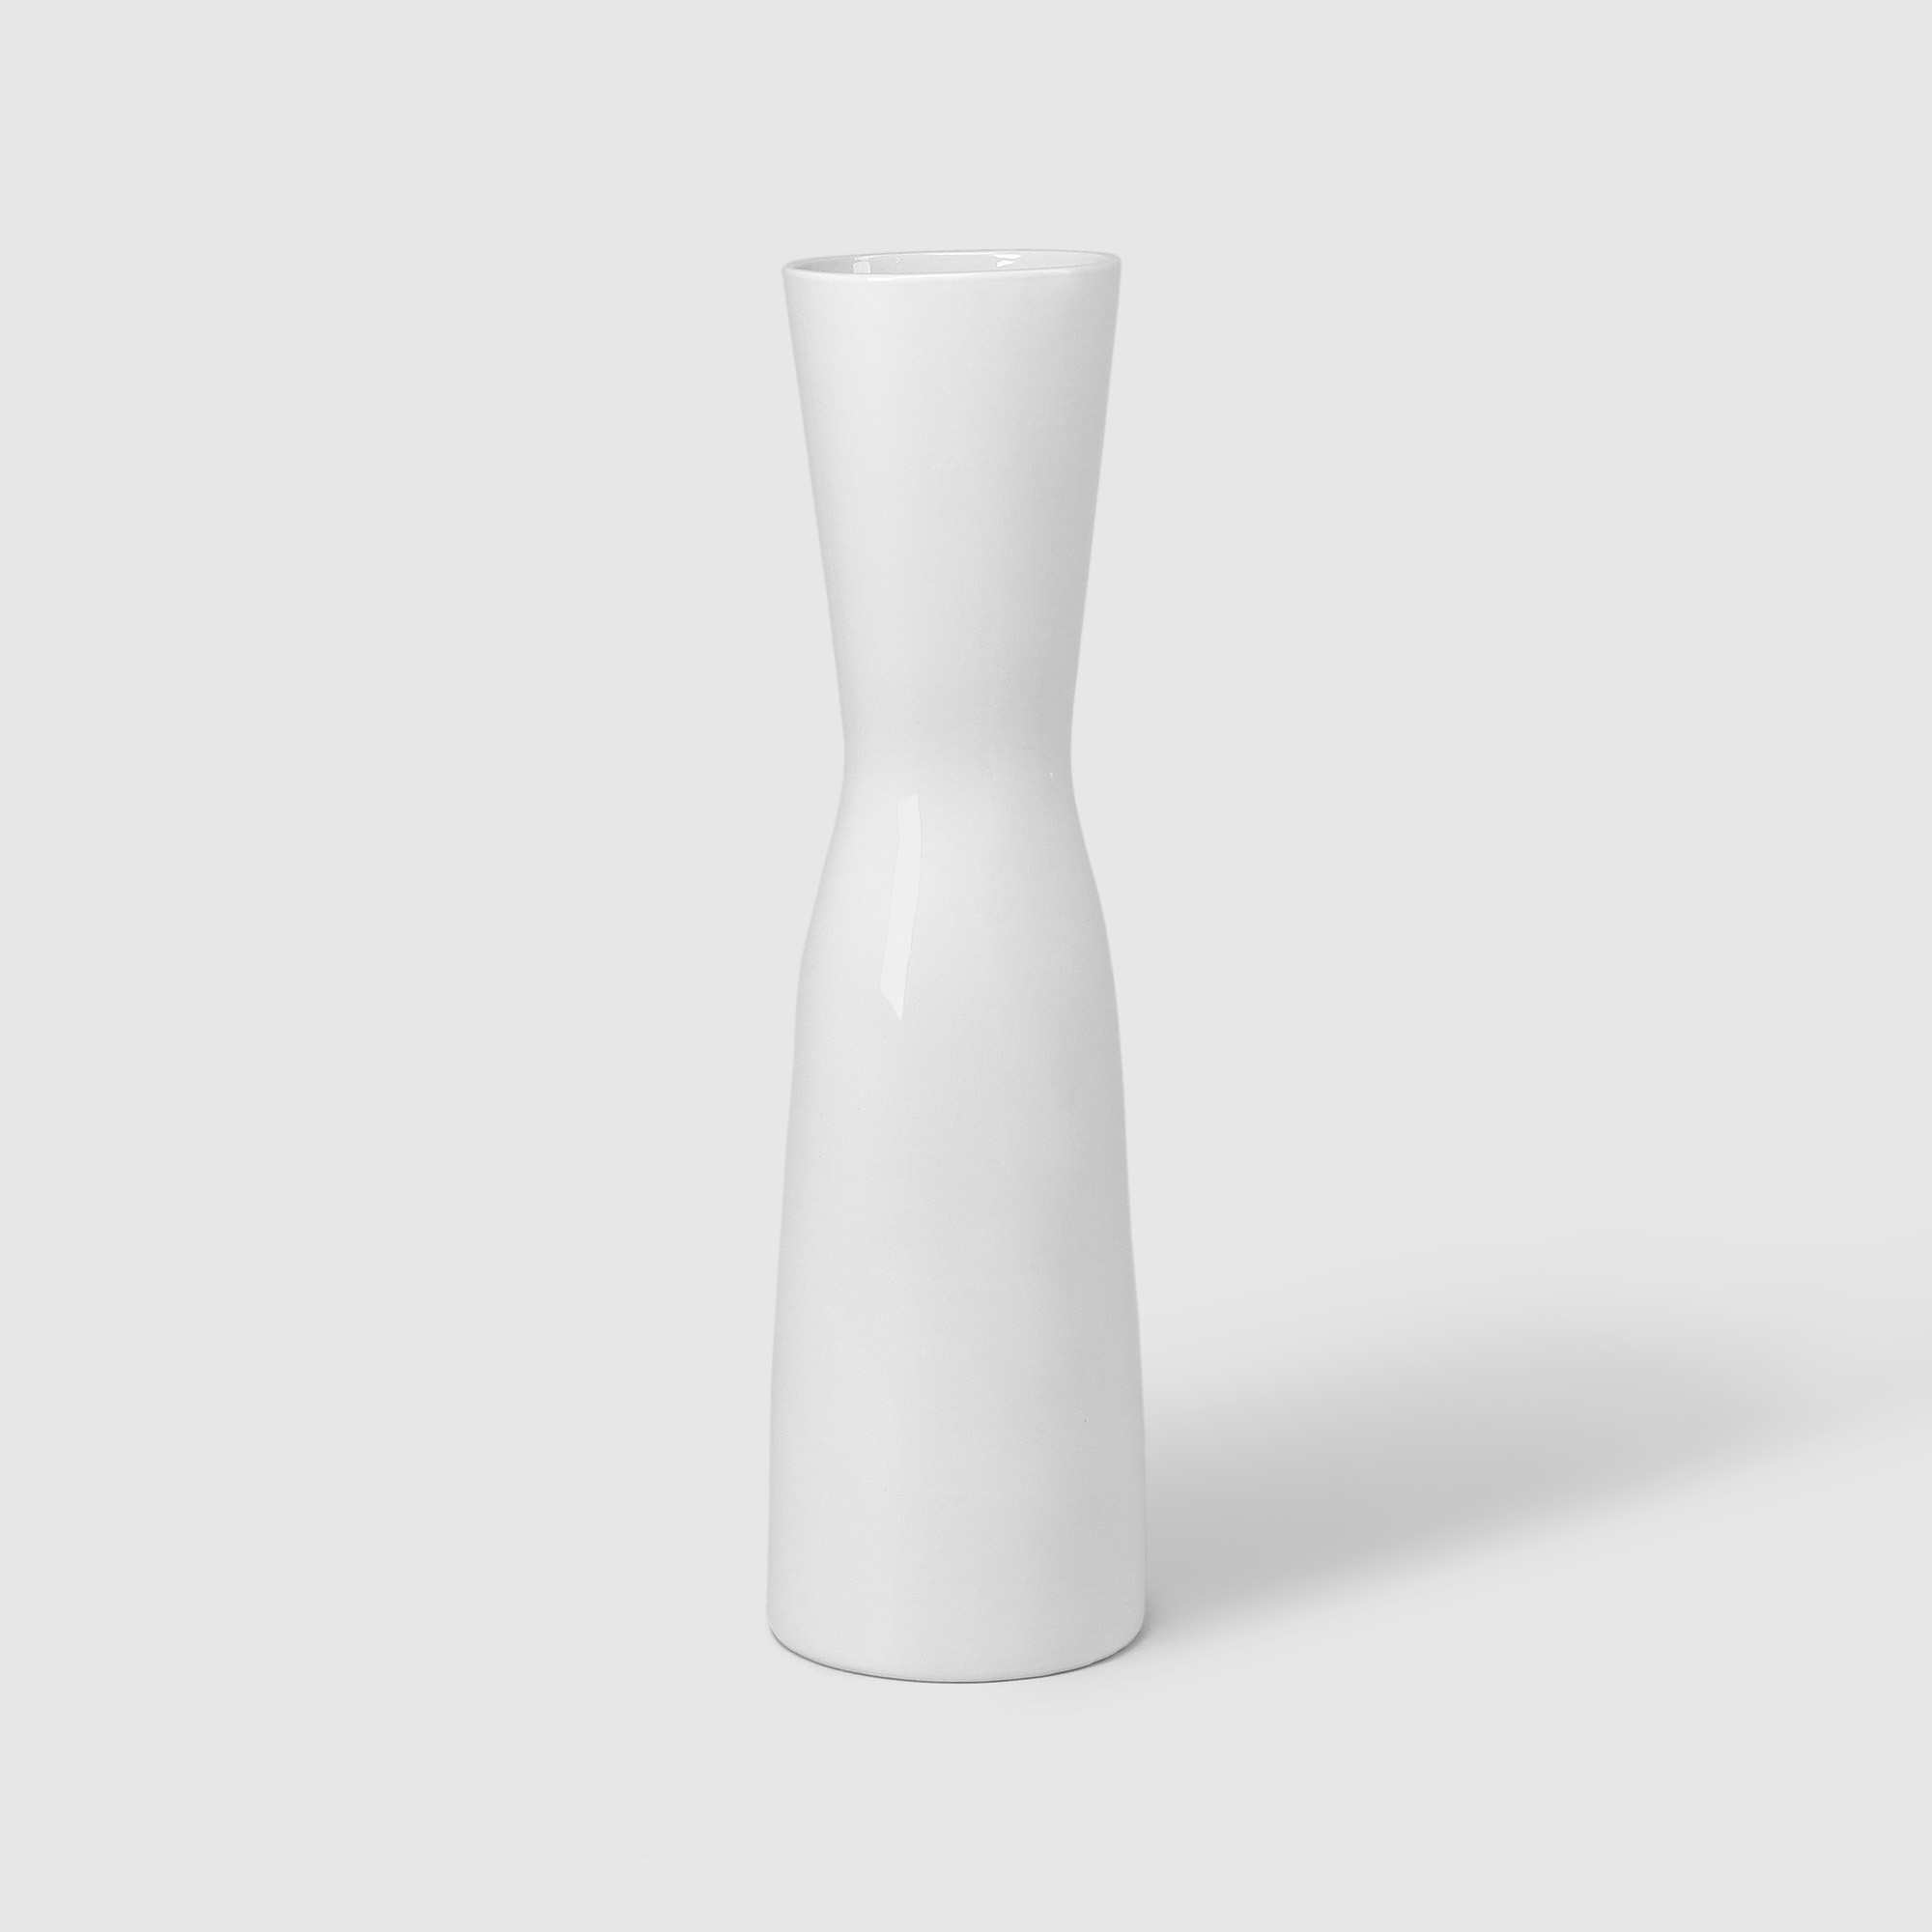 Ваза Porc-сeramic керамическая Алиса 20х40 см в ассортименте ваза 7х7х21 см в ассортименте